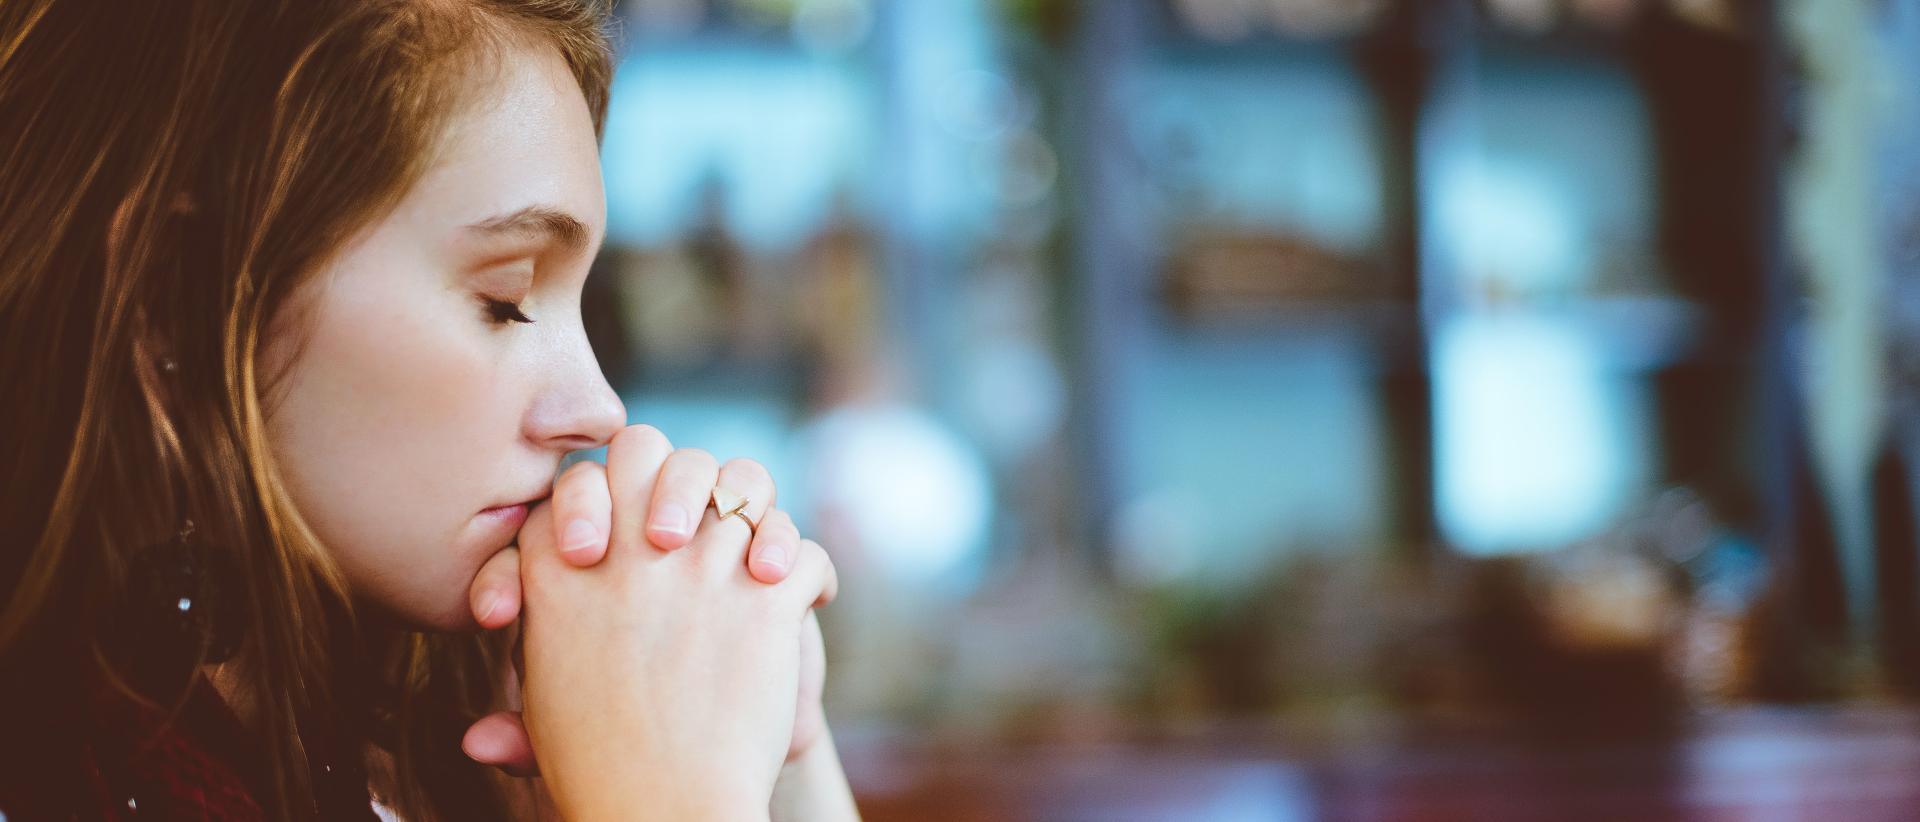 Nuori nainen istuu silmät kiinni ja kädet ristissä kasvojen edessä rukoilemassa